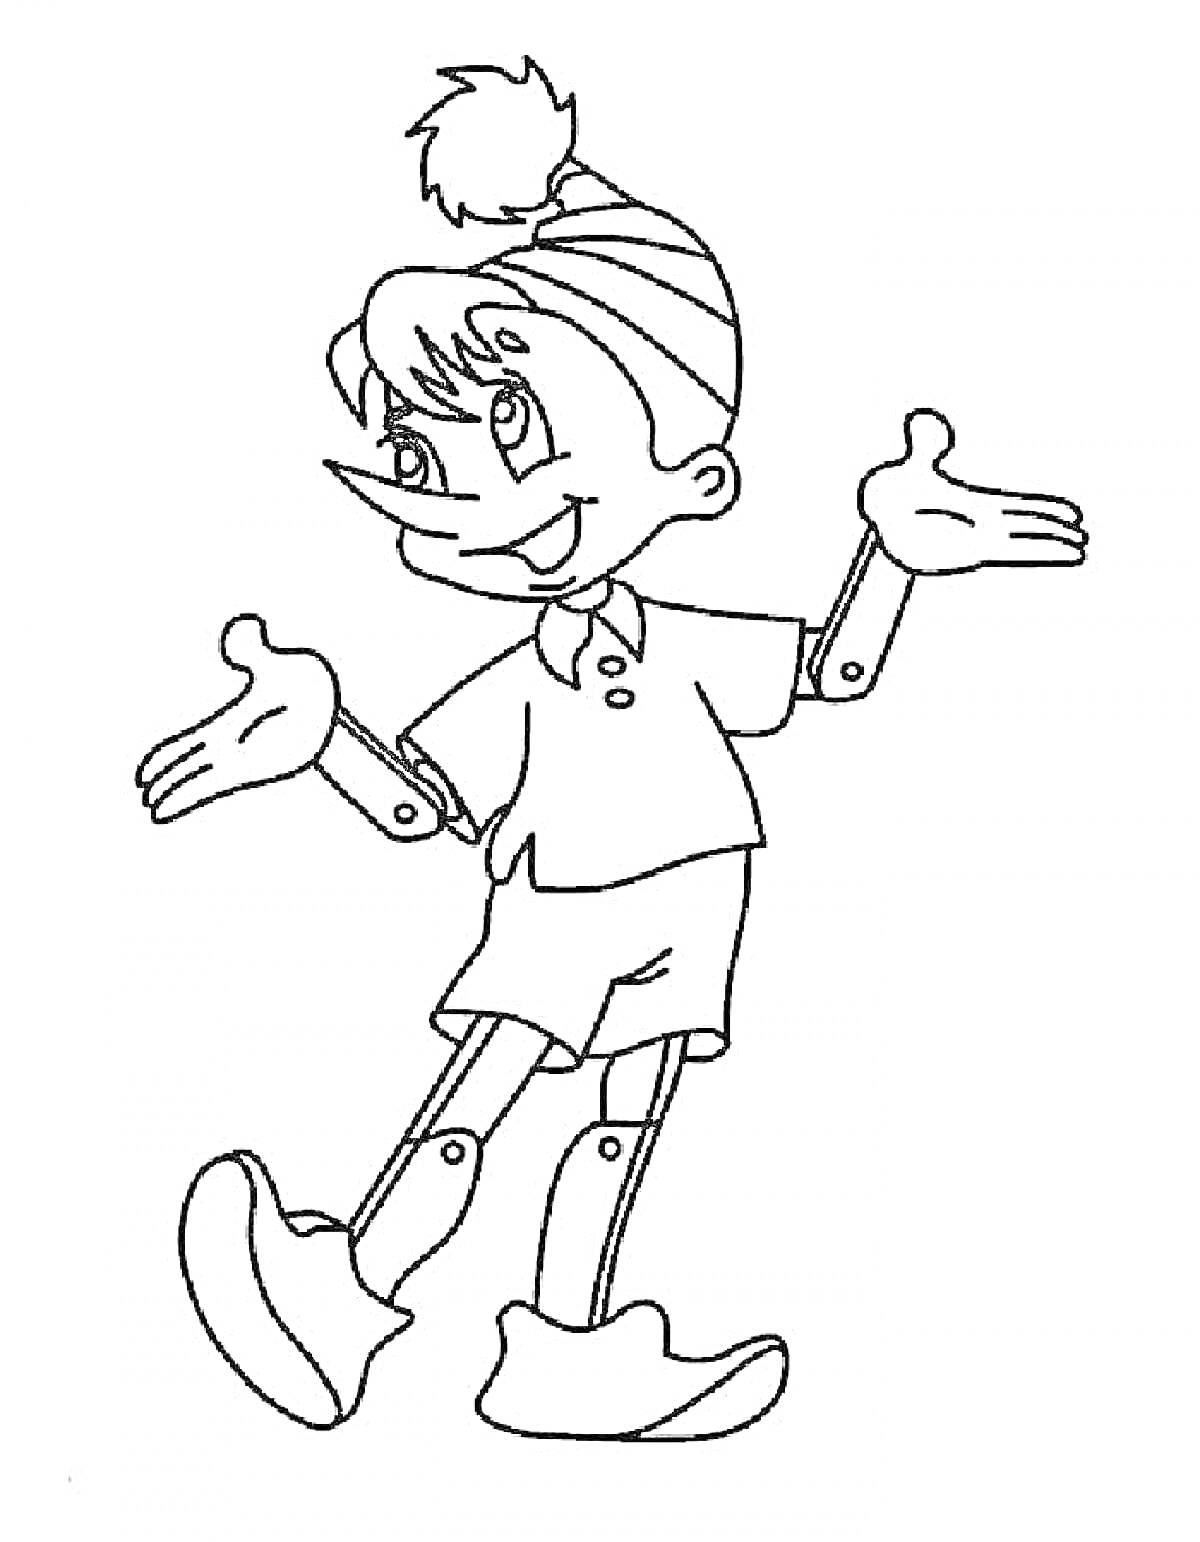 Раскраска Мальчик с круглой шапкой с помпоном, в коротких штанах и ботинках, с подвижными суставами на локтях и коленях